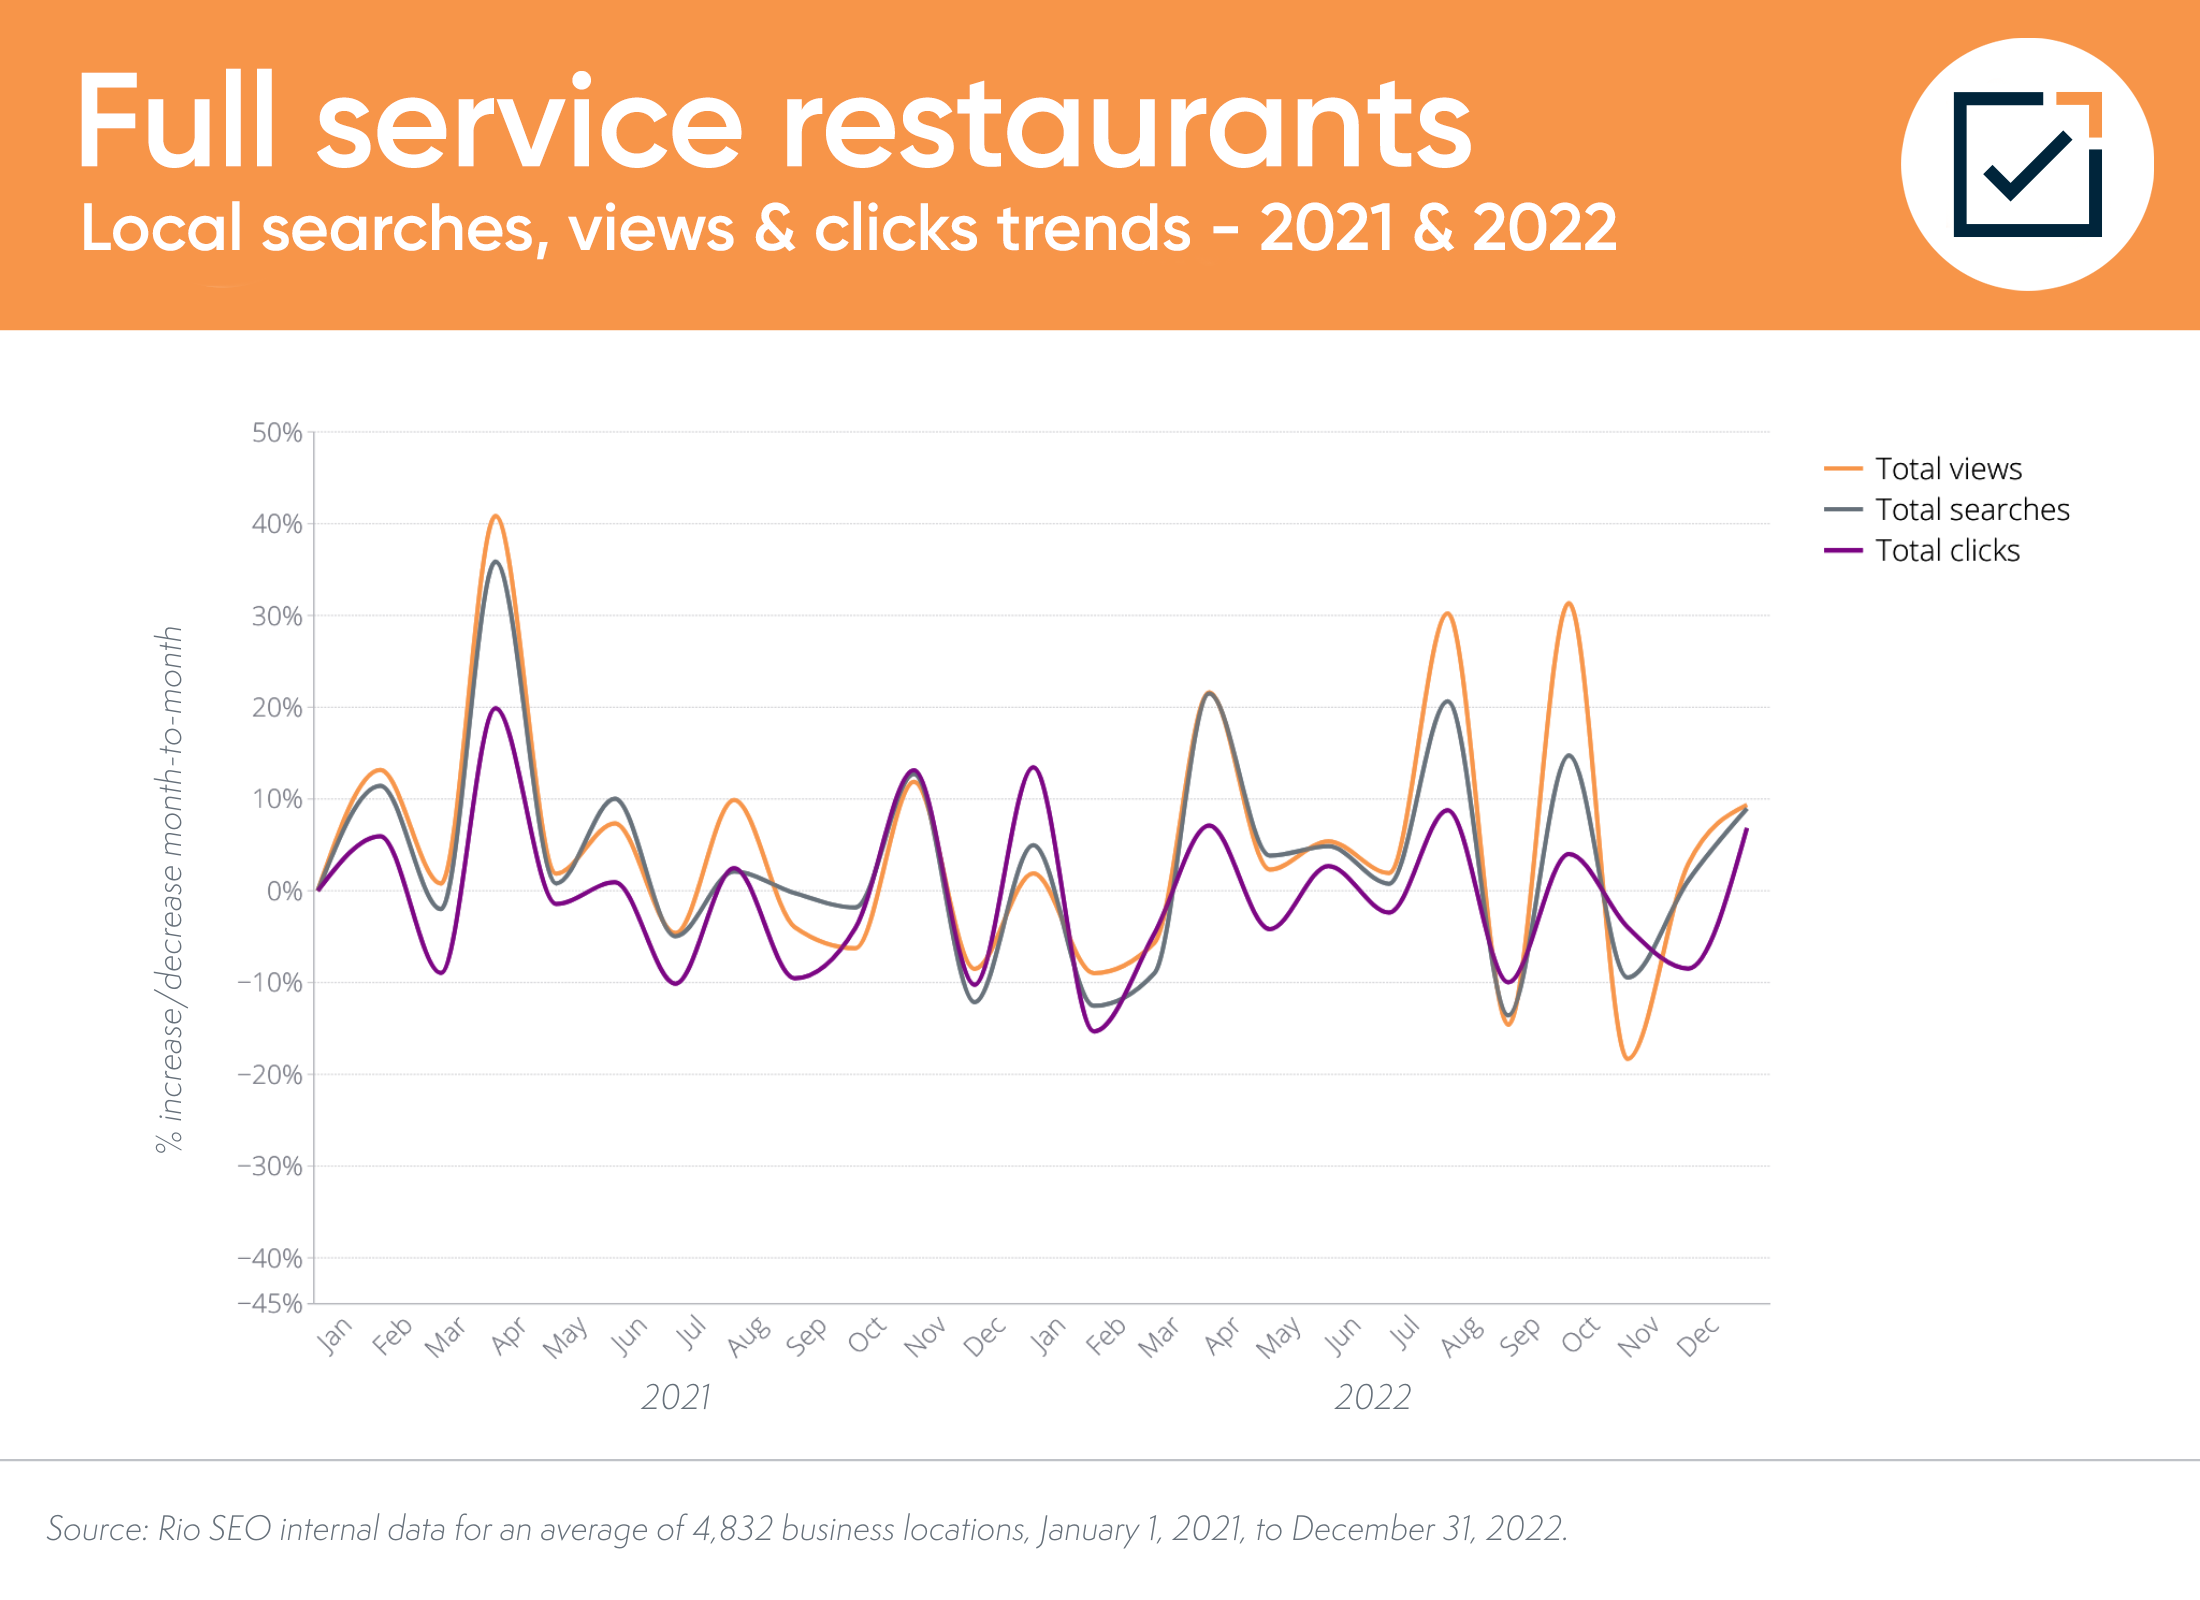 Tendances locales de recherche et de conversion des restaurants à service complet